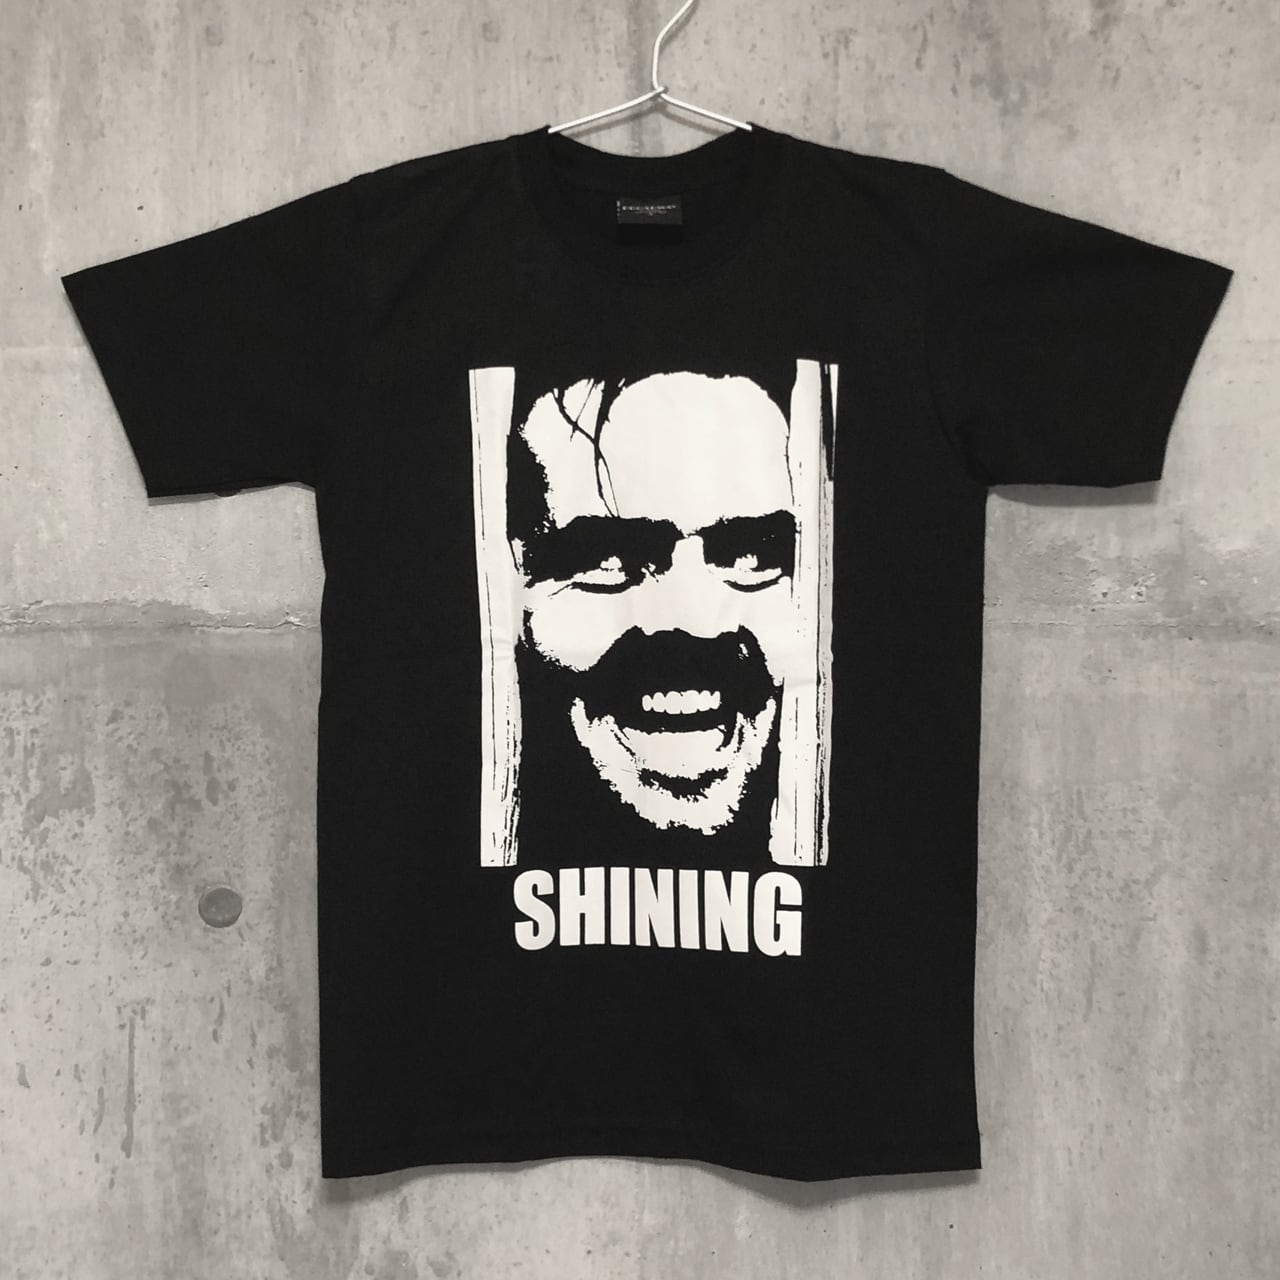 The Shining シャイニング ジャックニコルソン Tシャツ